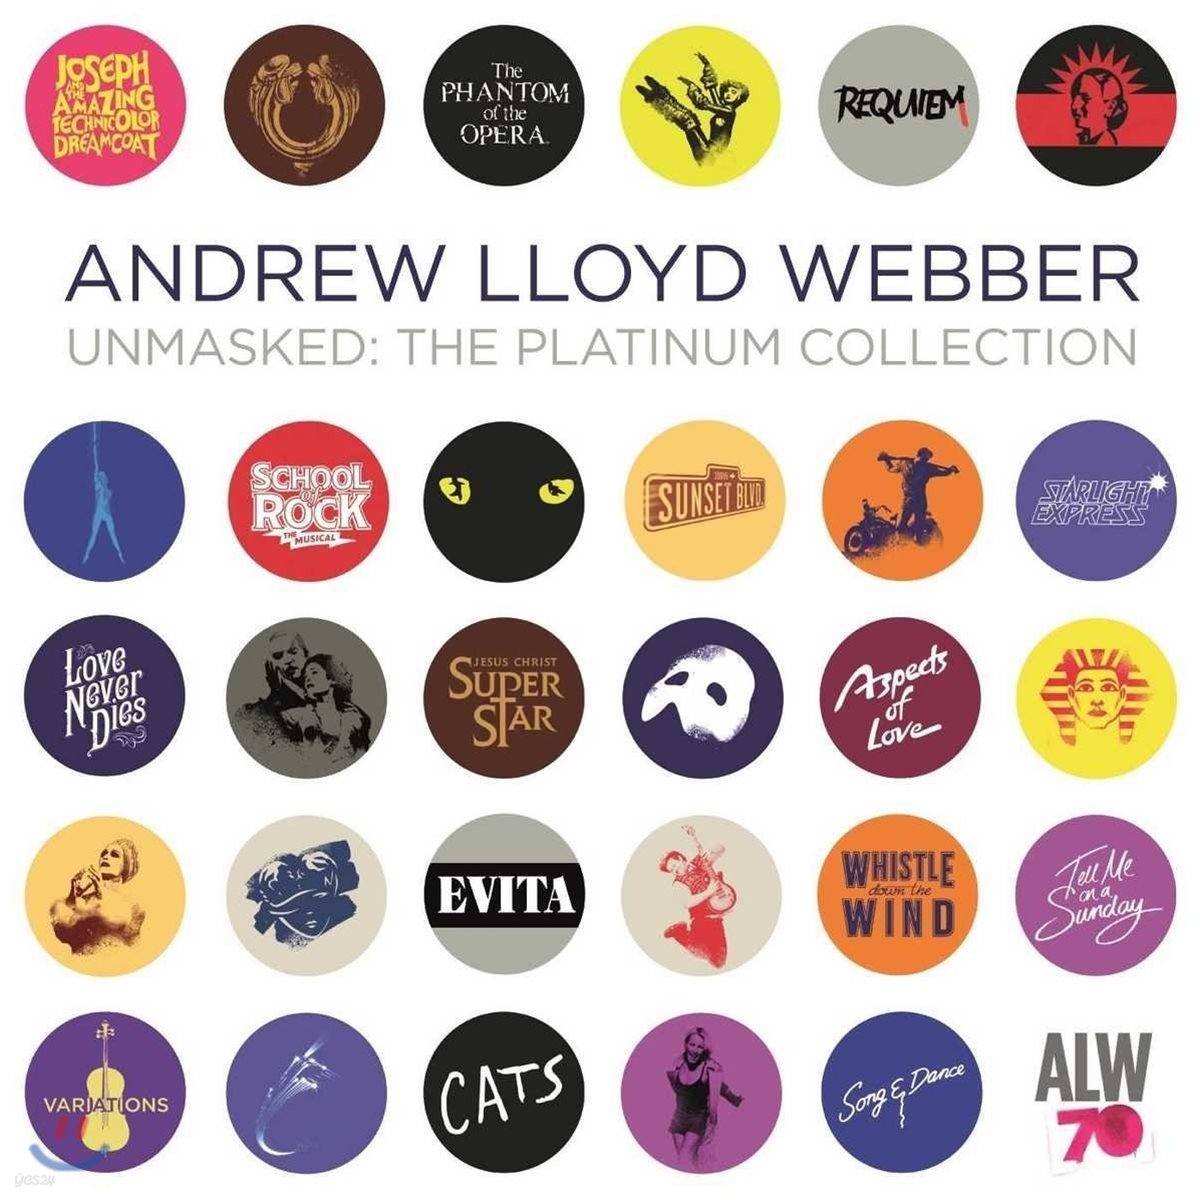 앤드류 로이드 웨버 뮤지컬 음악 모음집 (Andrew Lloyd Webber - Unmasked: The Platinum Collection)